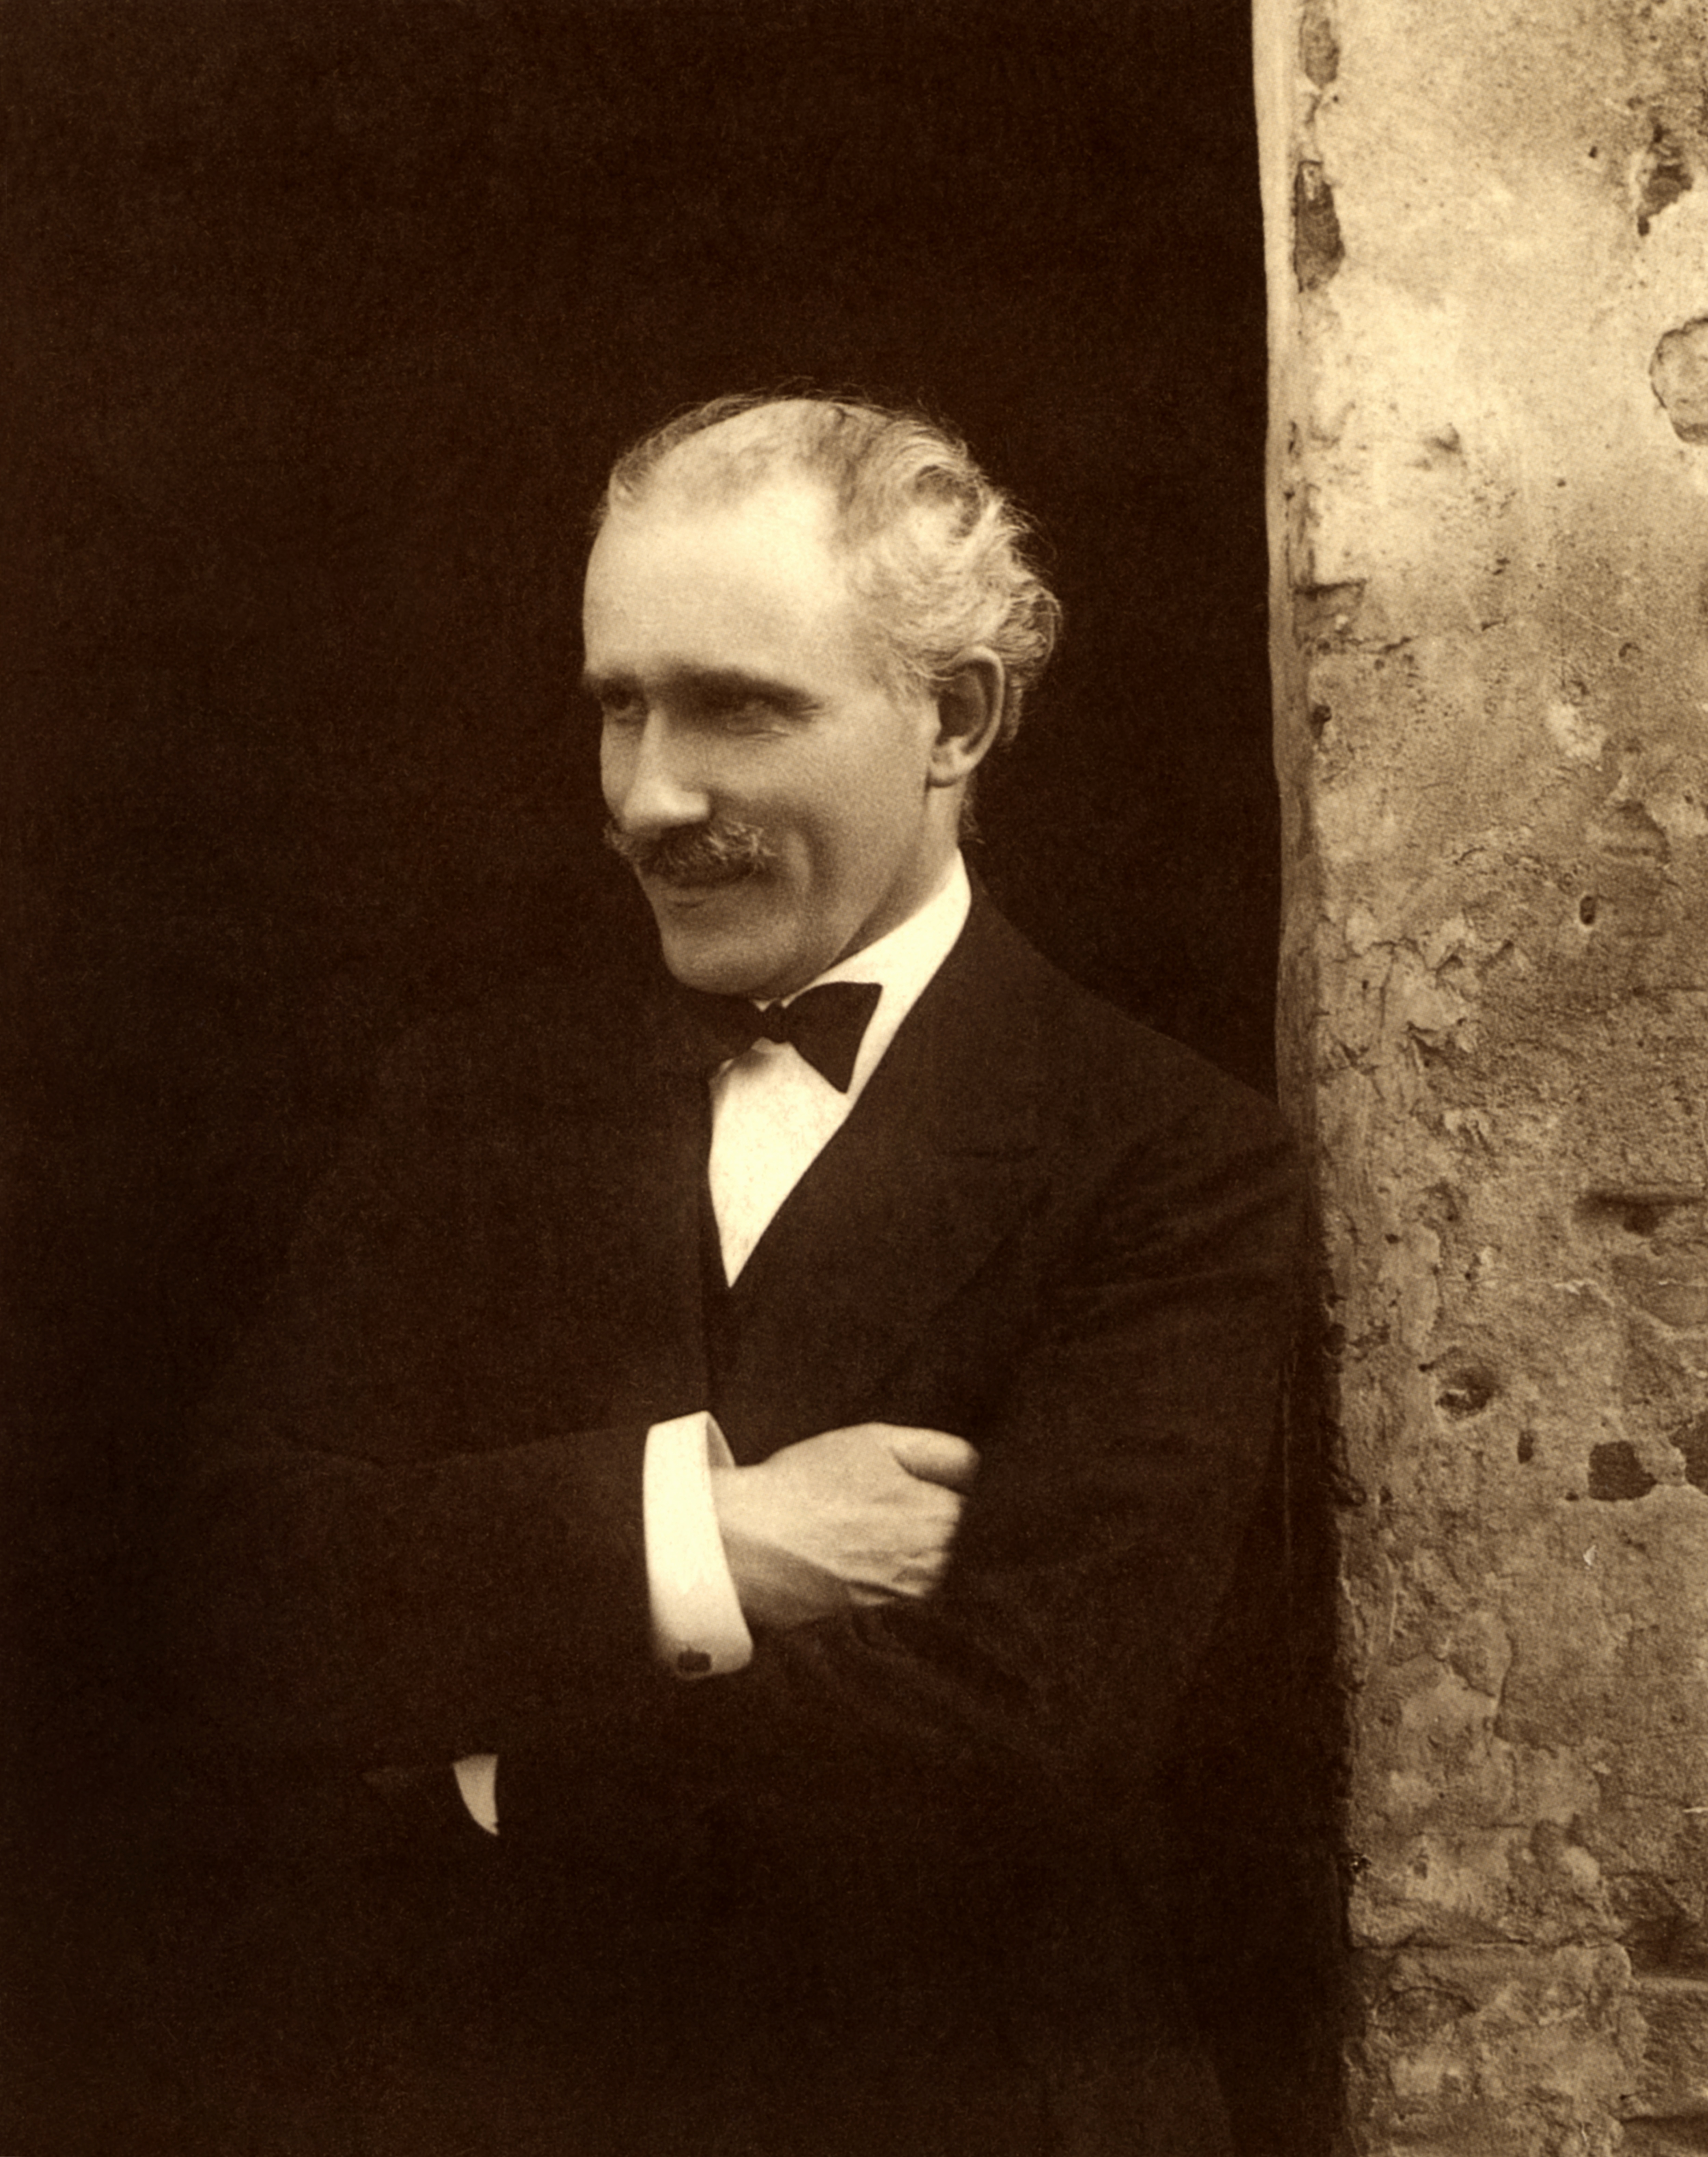 1926. Ritratto di Arturo Toscanini.